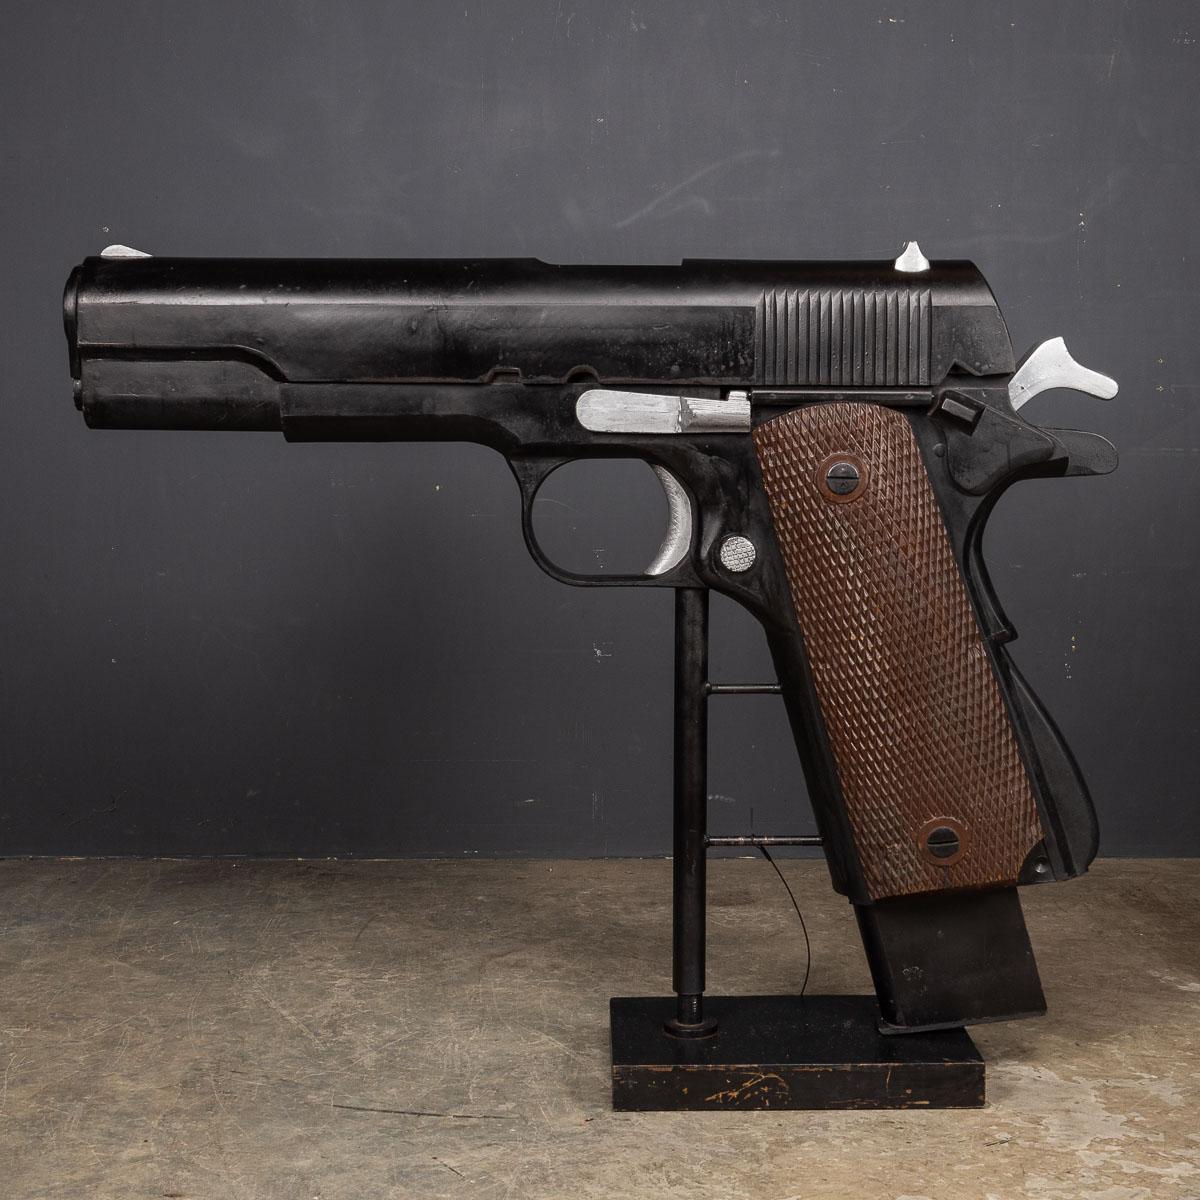 Cet énorme modèle du M1911, mesurant plus d'un mètre de haut, également connu sous le nom de Colt 1911 ou Colt Government pour les modèles produits par Colt, est une arme à feu emblématique. Ce pistolet semi-automatique à simple action, actionné par